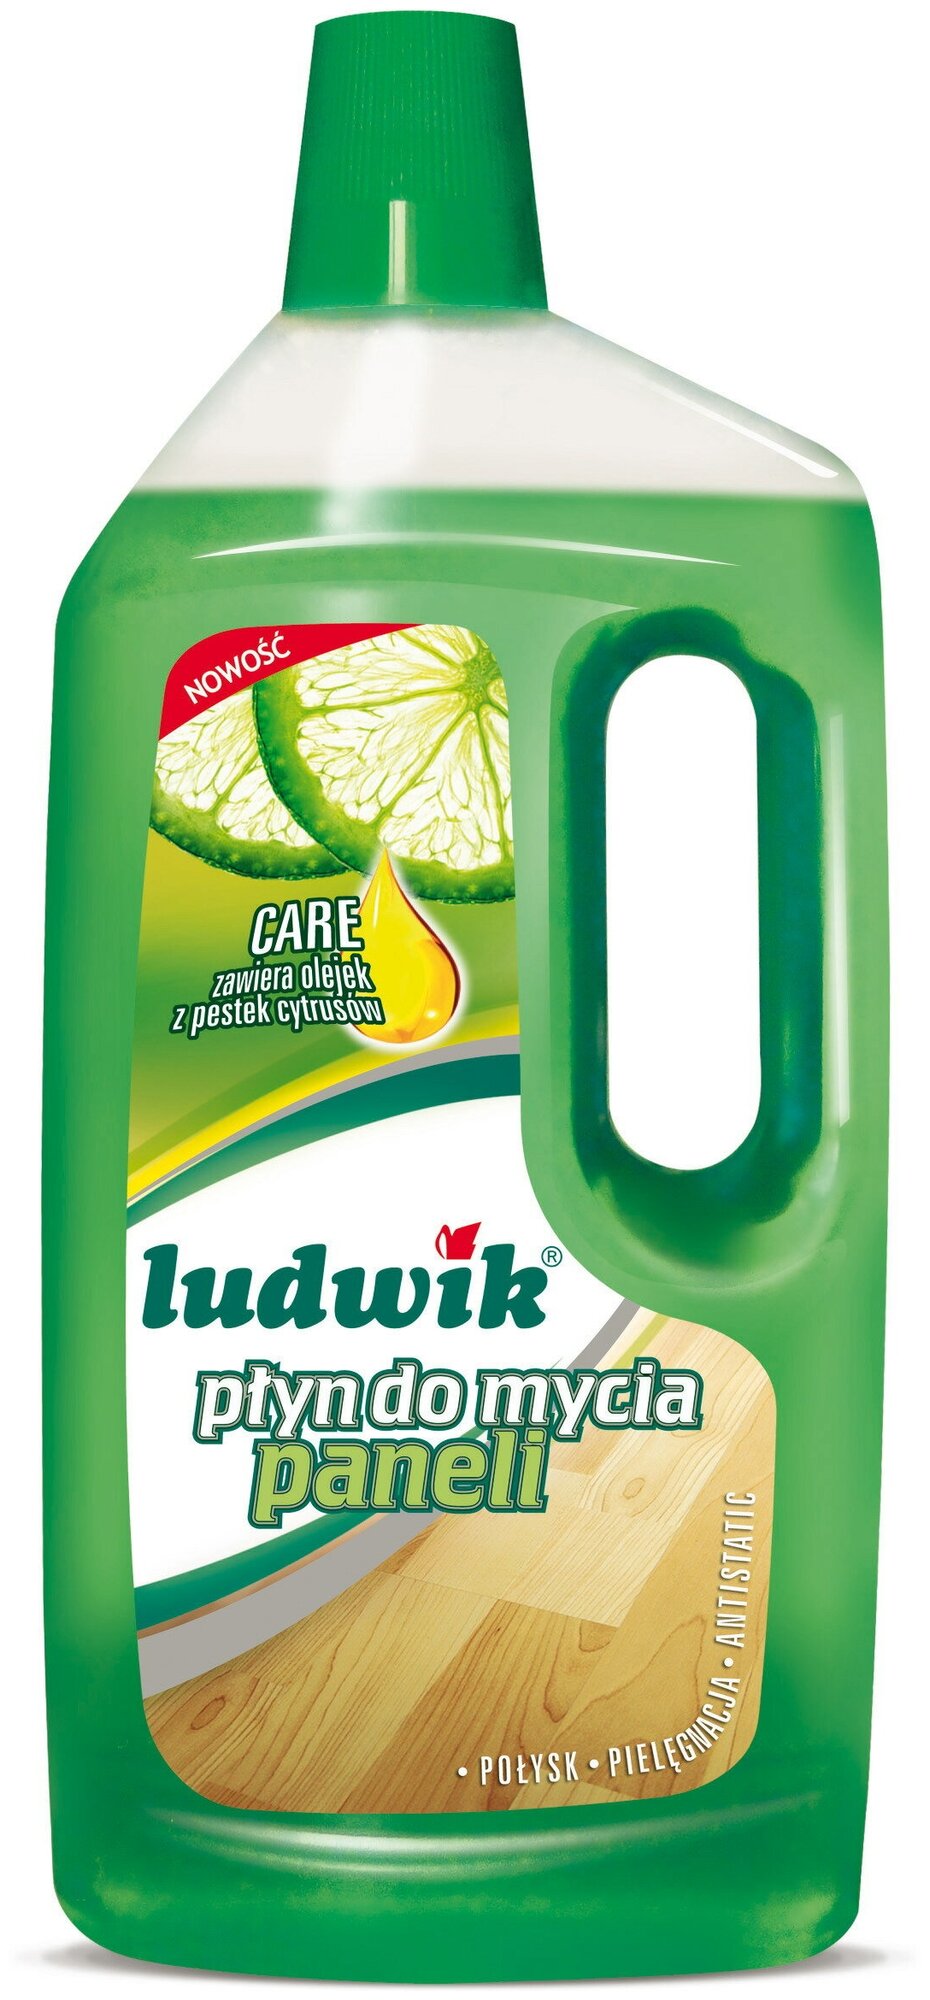 Cредство для мытья ламината LUDWIK